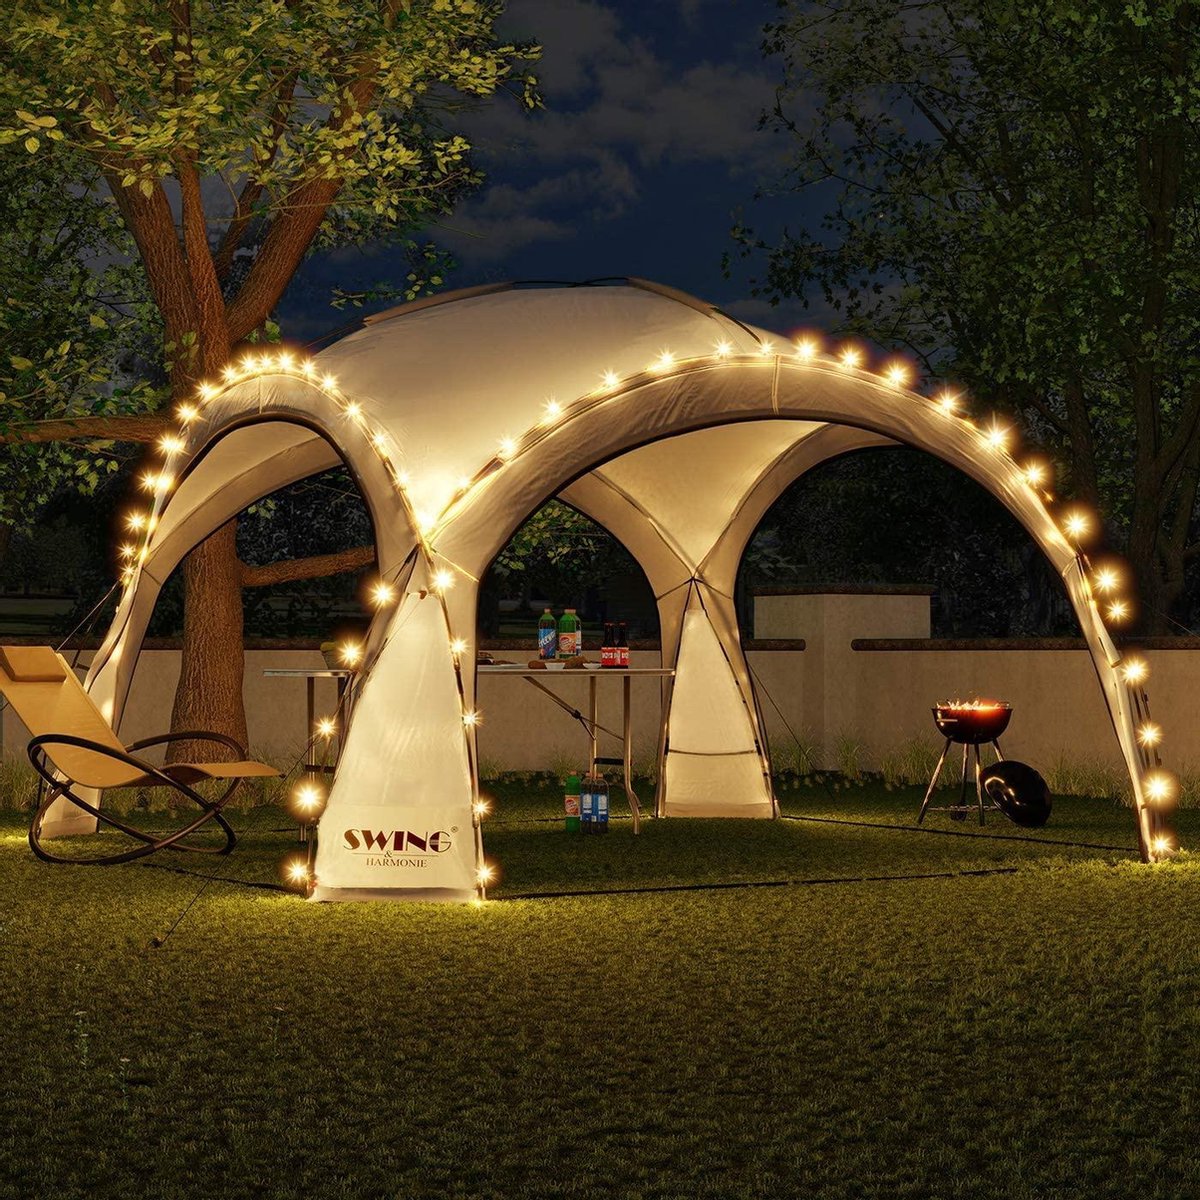 Bobby's Swing & Harmonie LED Partytent - Tuinpaviljoen incl. zonnepaneel - Paviljoen - Designer - Tuintent - Camping - Partytent met verlichting - Antraciet - 3,6 x 3,6 m